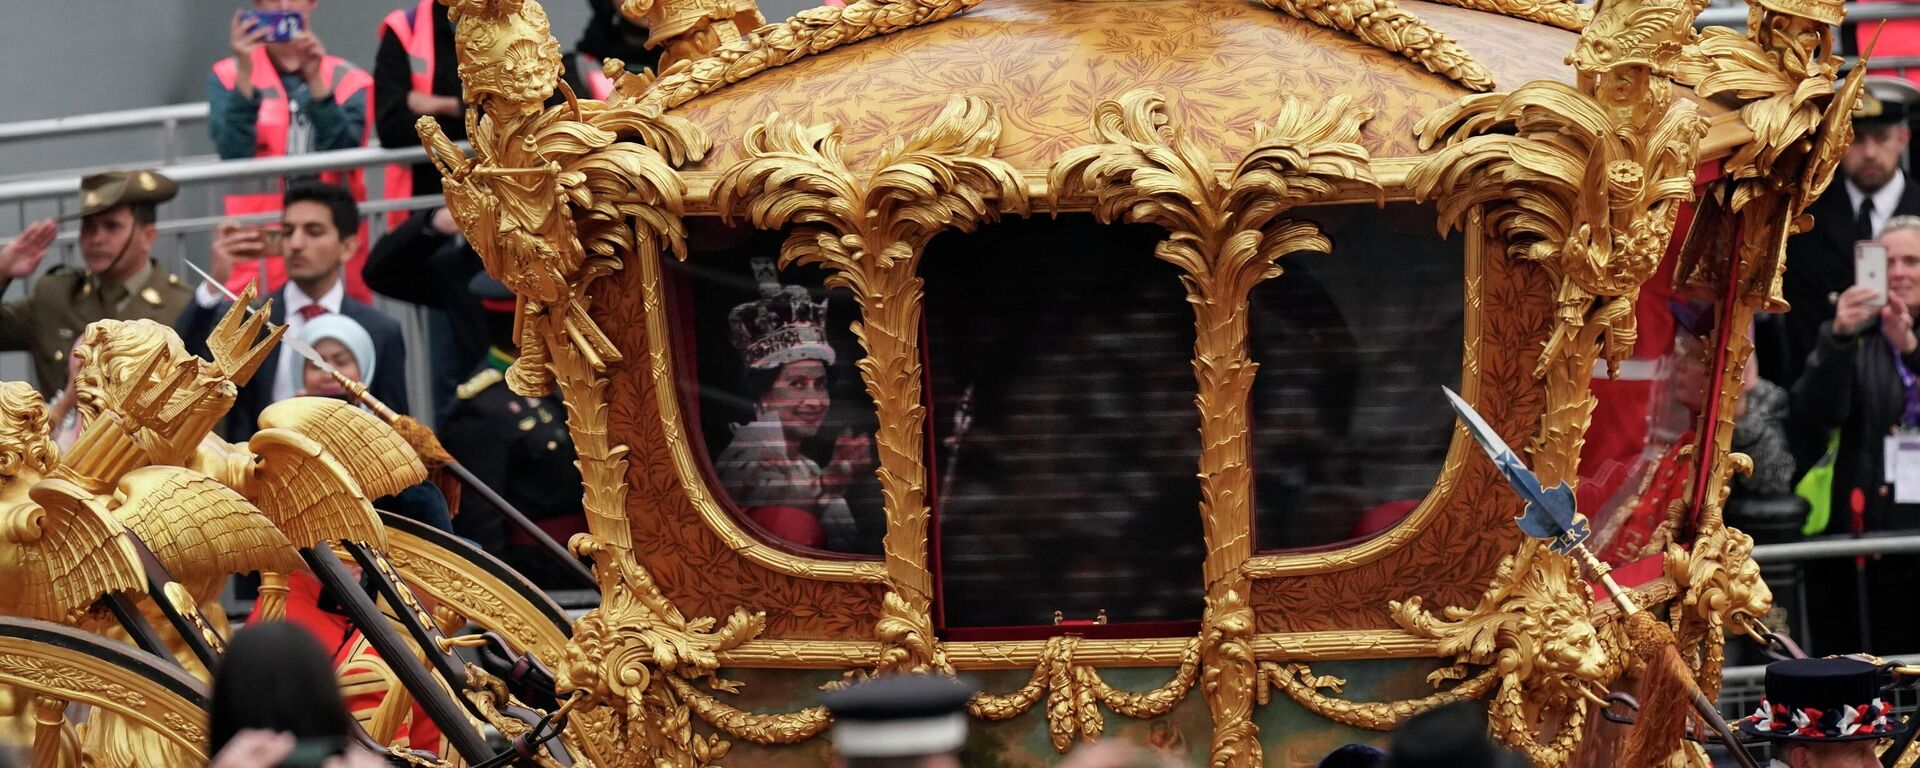 İngiltere Kraliçesi 2. Elizabeth, sağlık sorunları nedeniyle tahttaki 70. yıl dönümü çerçevesinde yapılan birçok etkinliğe katılamazken, Kraliçe’nin hologramı tören alayı eşliğinde Buckingham Sarayı’na giden altın faytondan halkı selamladı. - Sputnik Türkiye, 1920, 05.06.2022